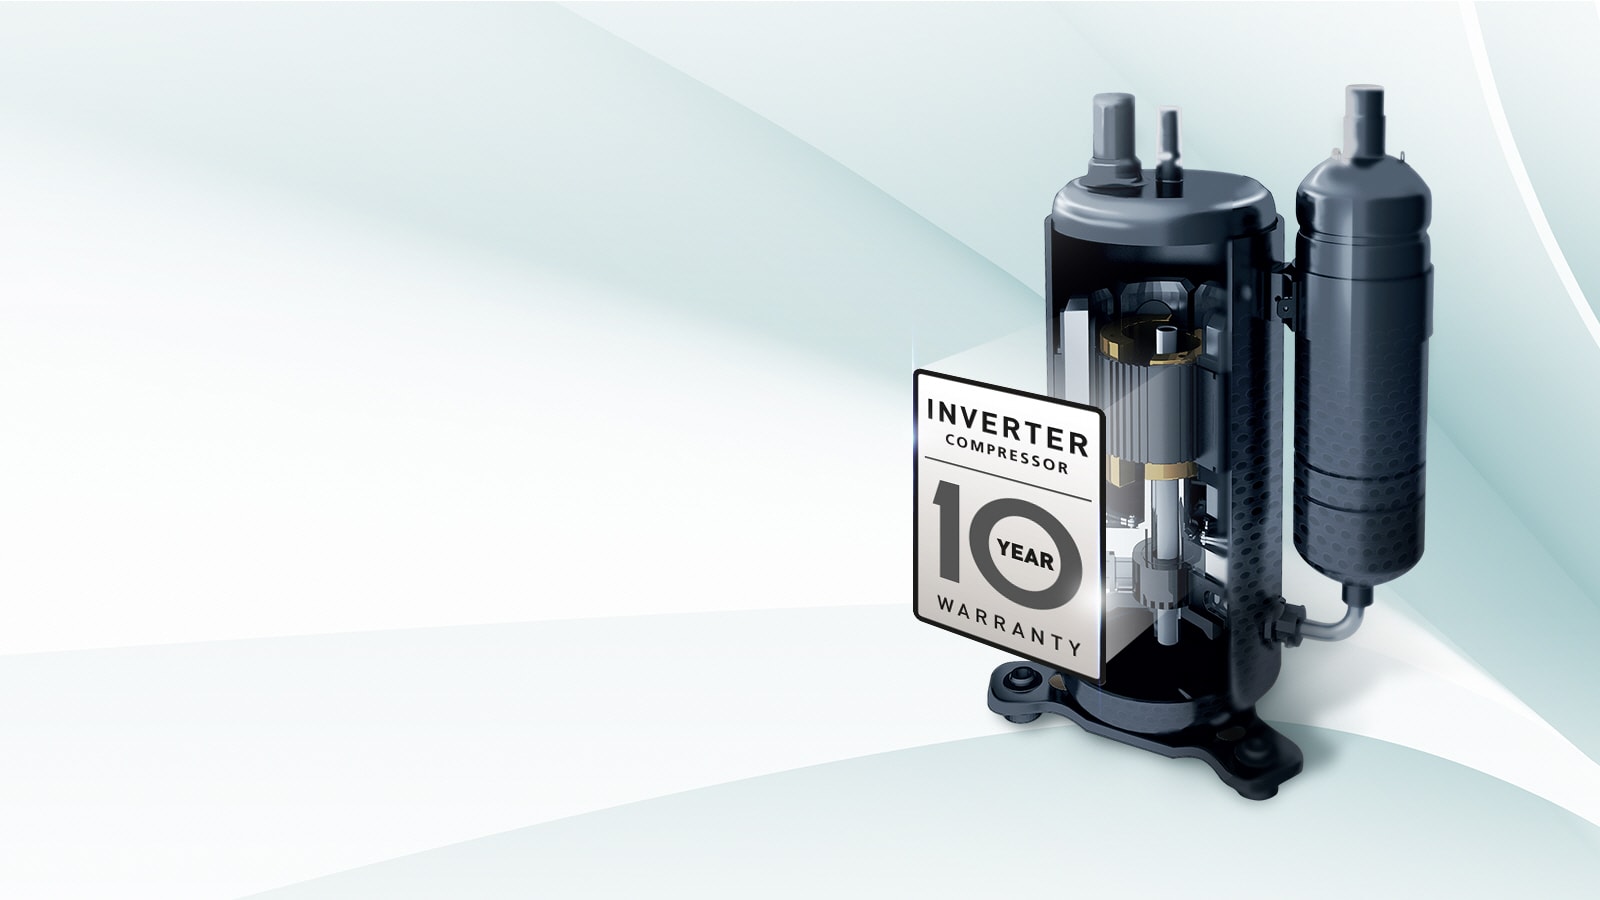 Lg smart inverter compressor